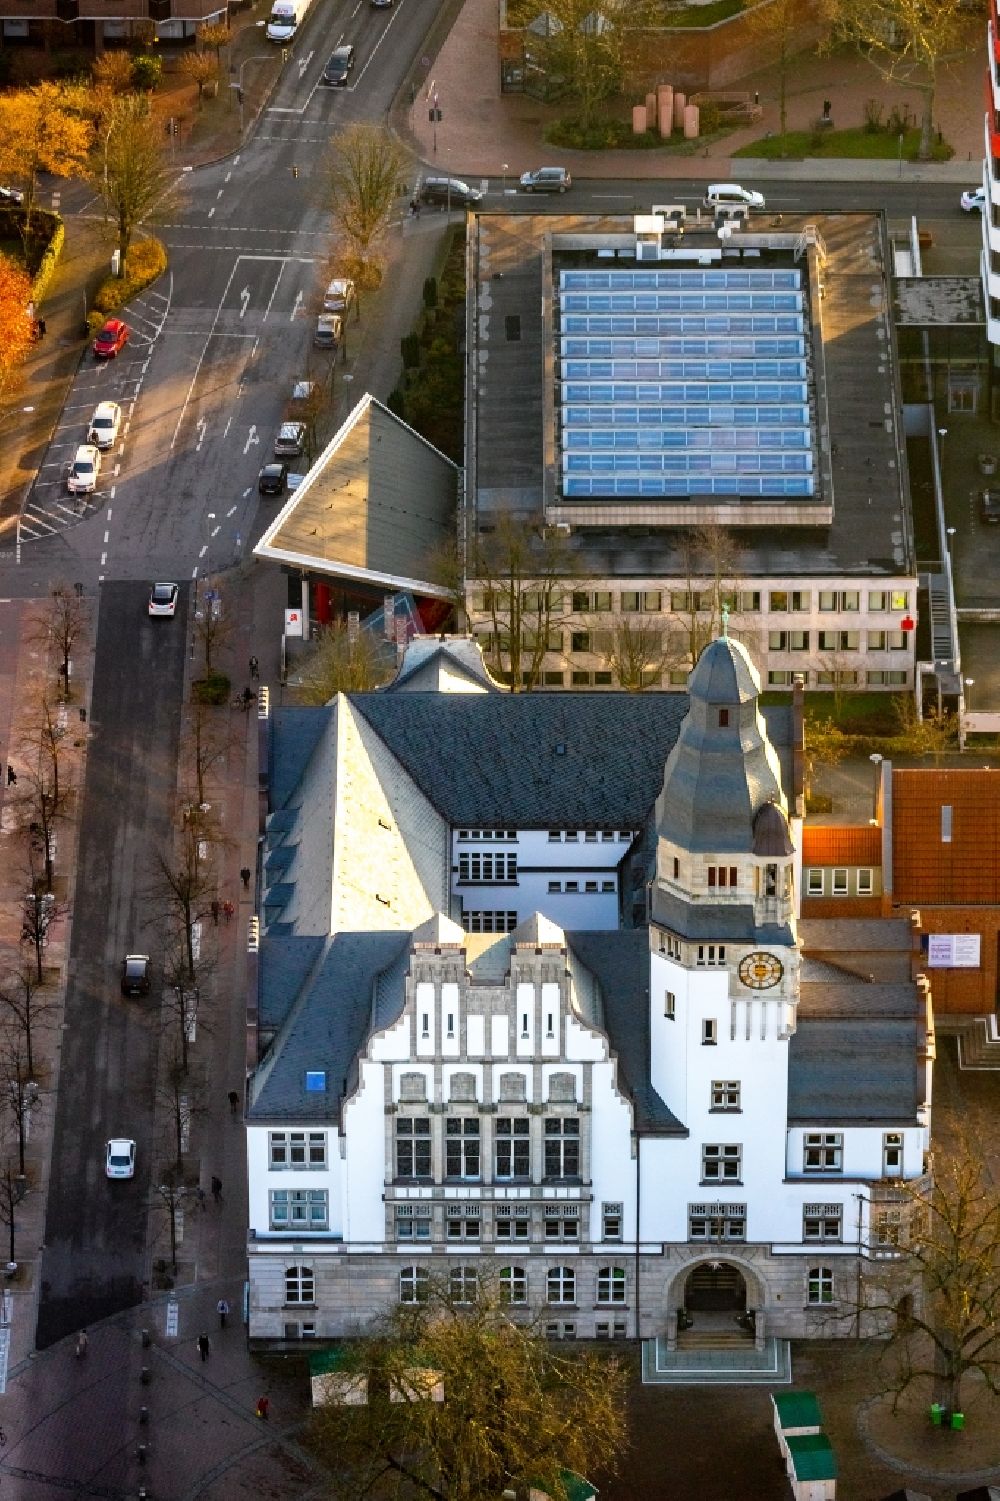 Gladbeck von oben - Gebäude der Stadtverwaltung - Rathaus in Gladbeck im Bundesland Nordrhein-Westfalen, Deutschland